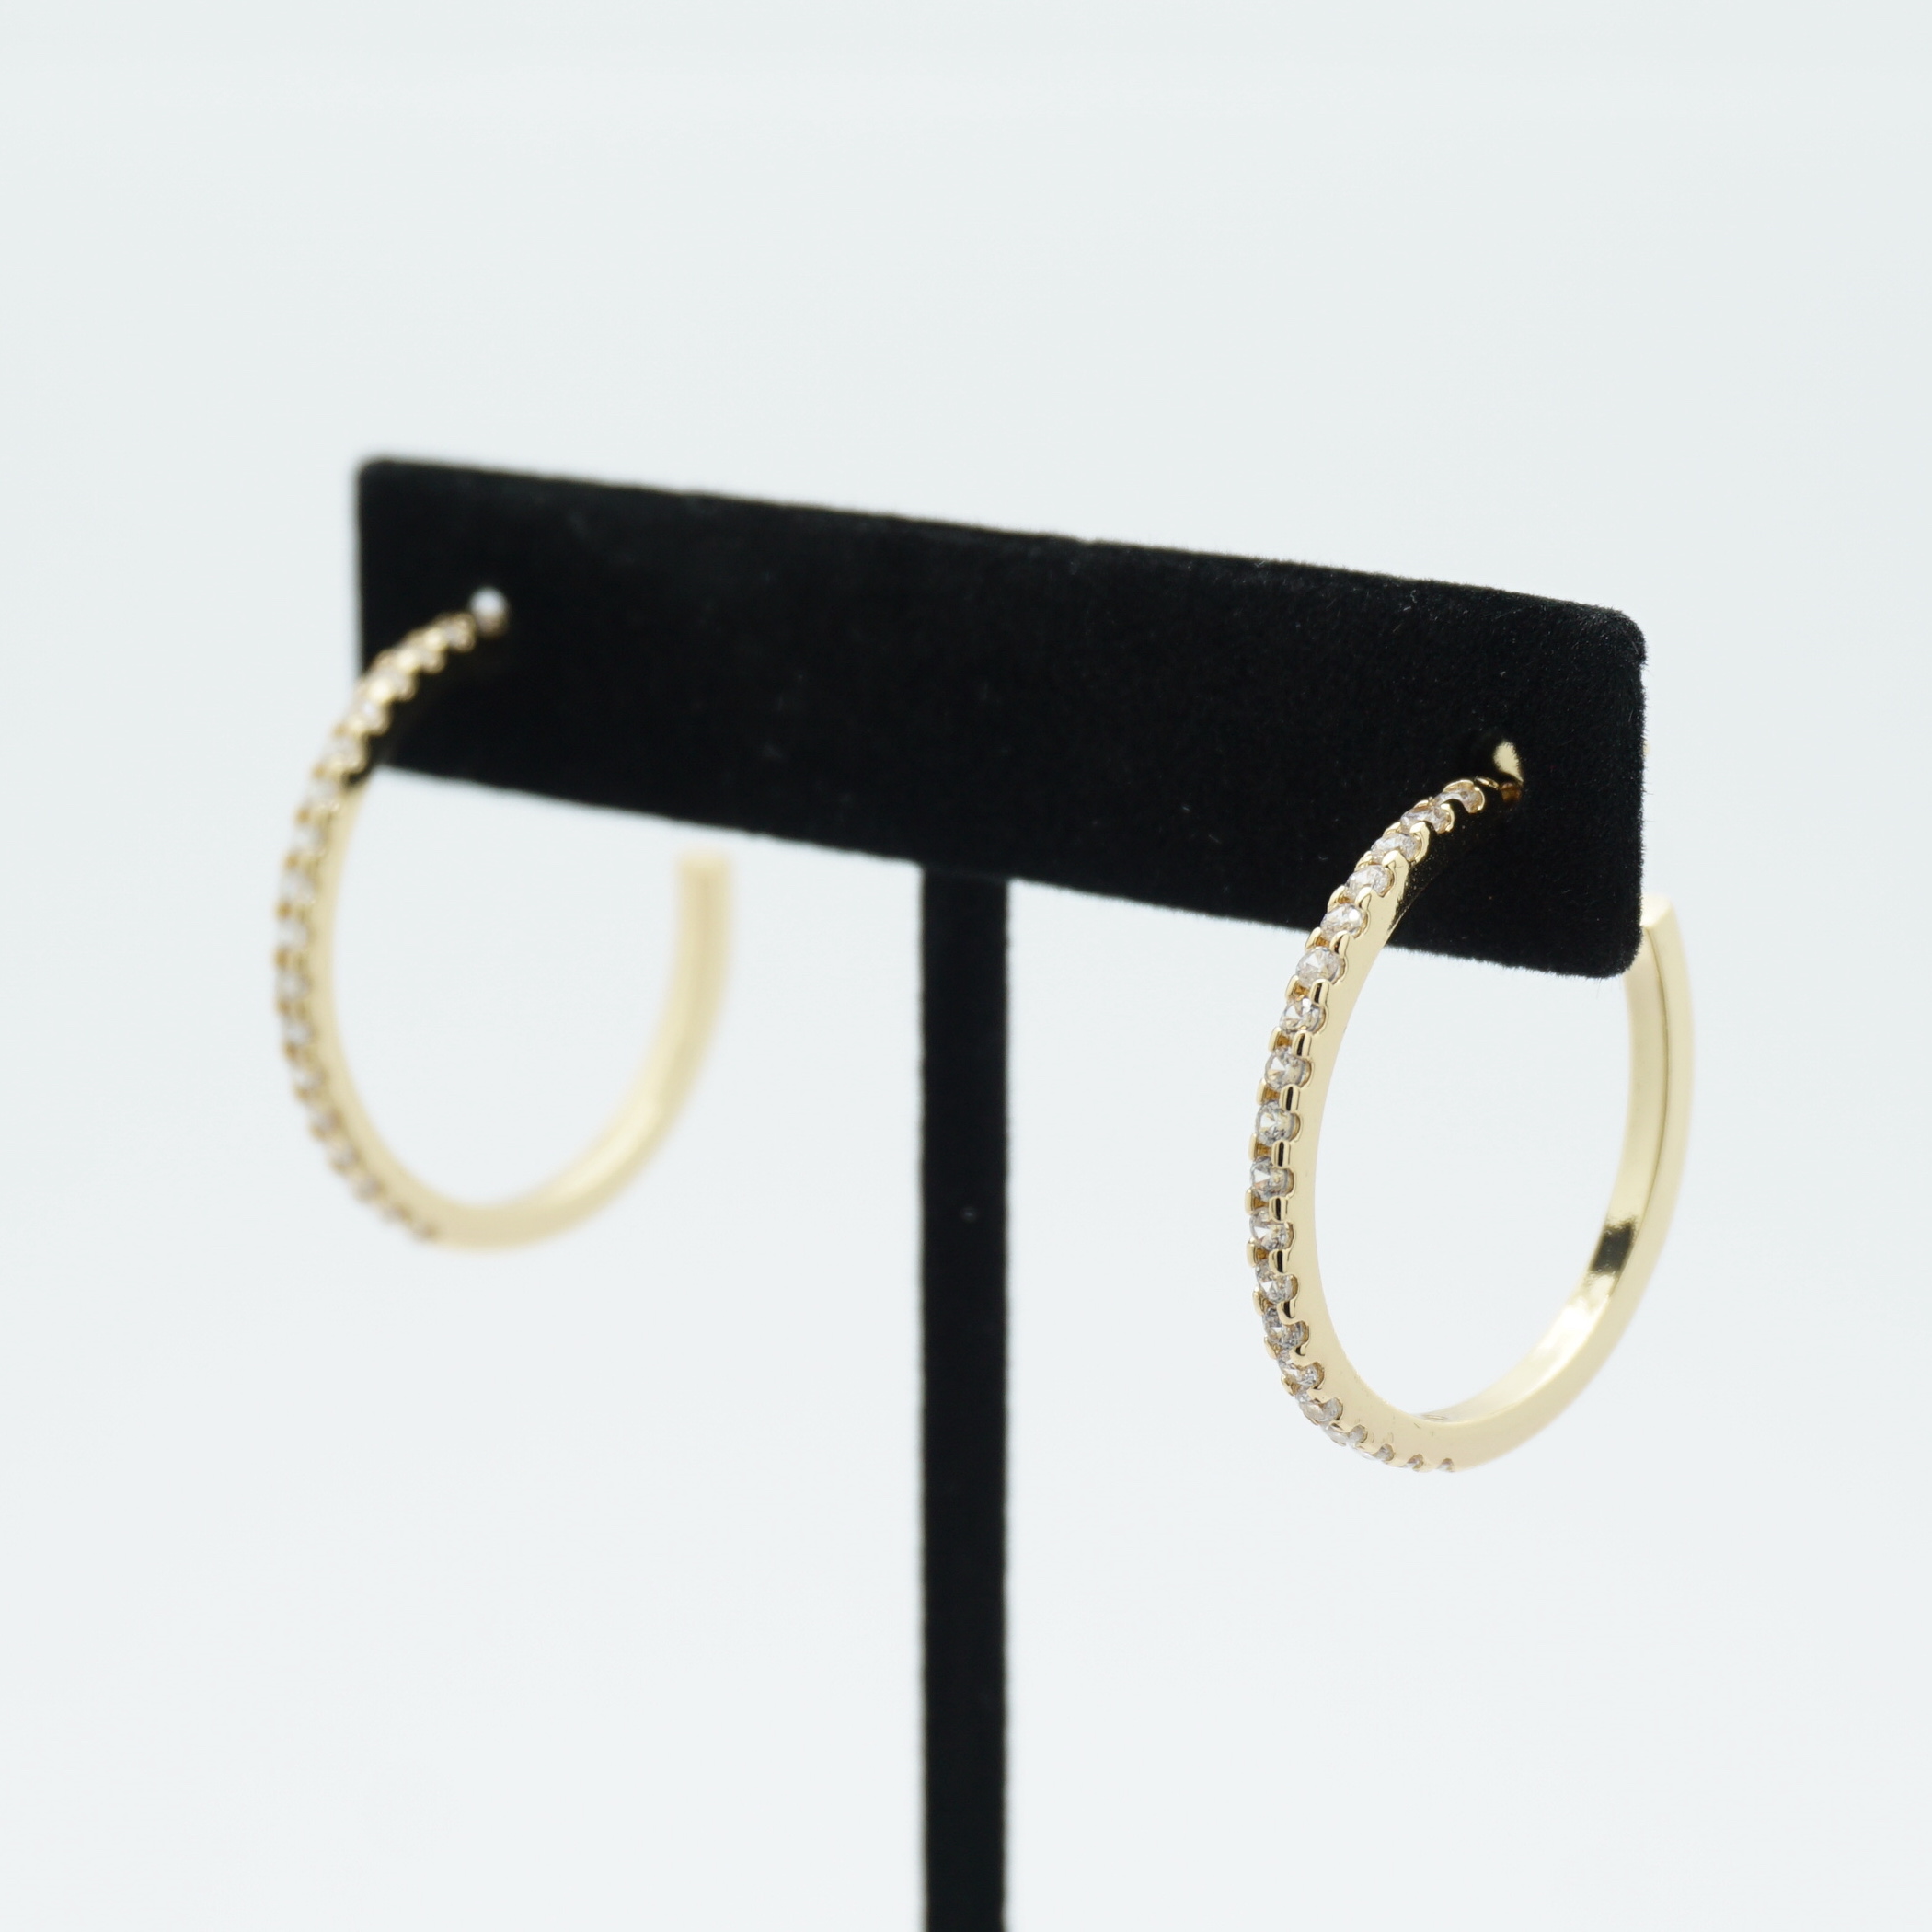 Skinny Crystal Hoop Earrings Medium in Gold on Stand